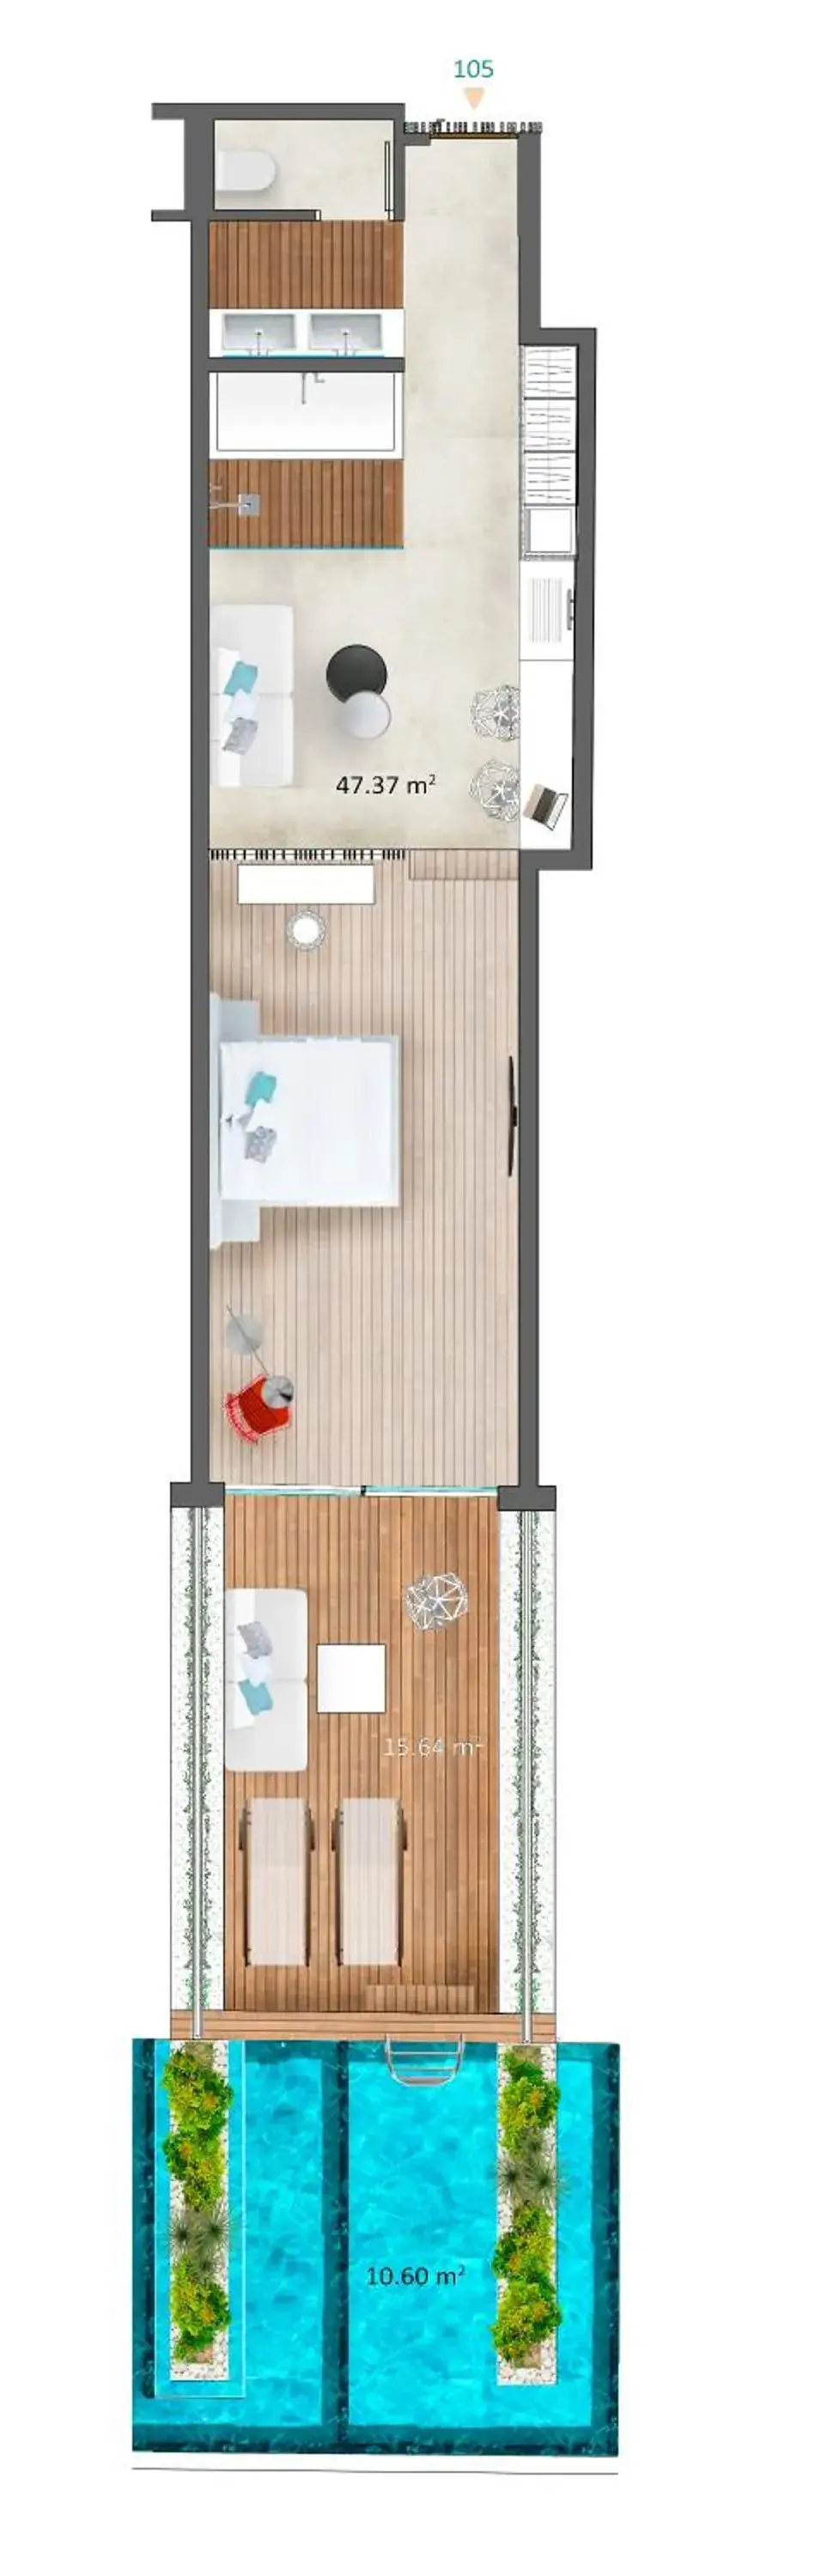 Floor Plan in Mykonos Dove Beachfront Hotel